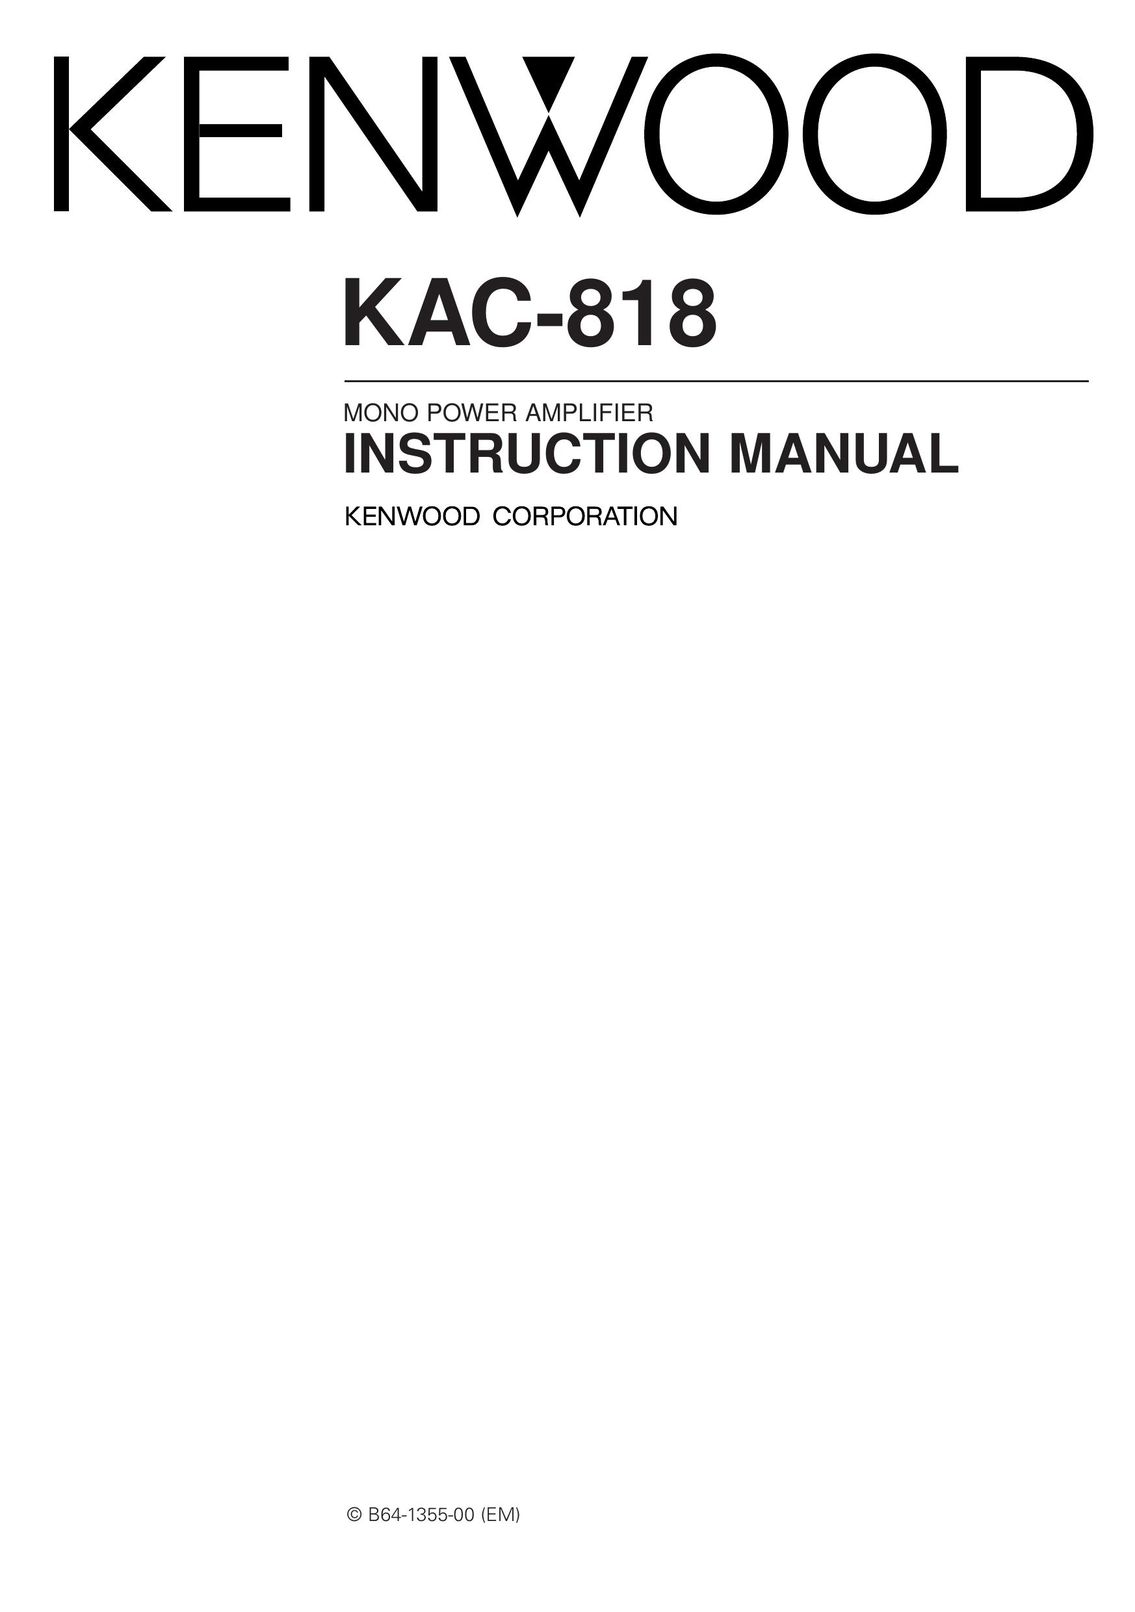 Kenwood KAC-818 Car Amplifier User Manual